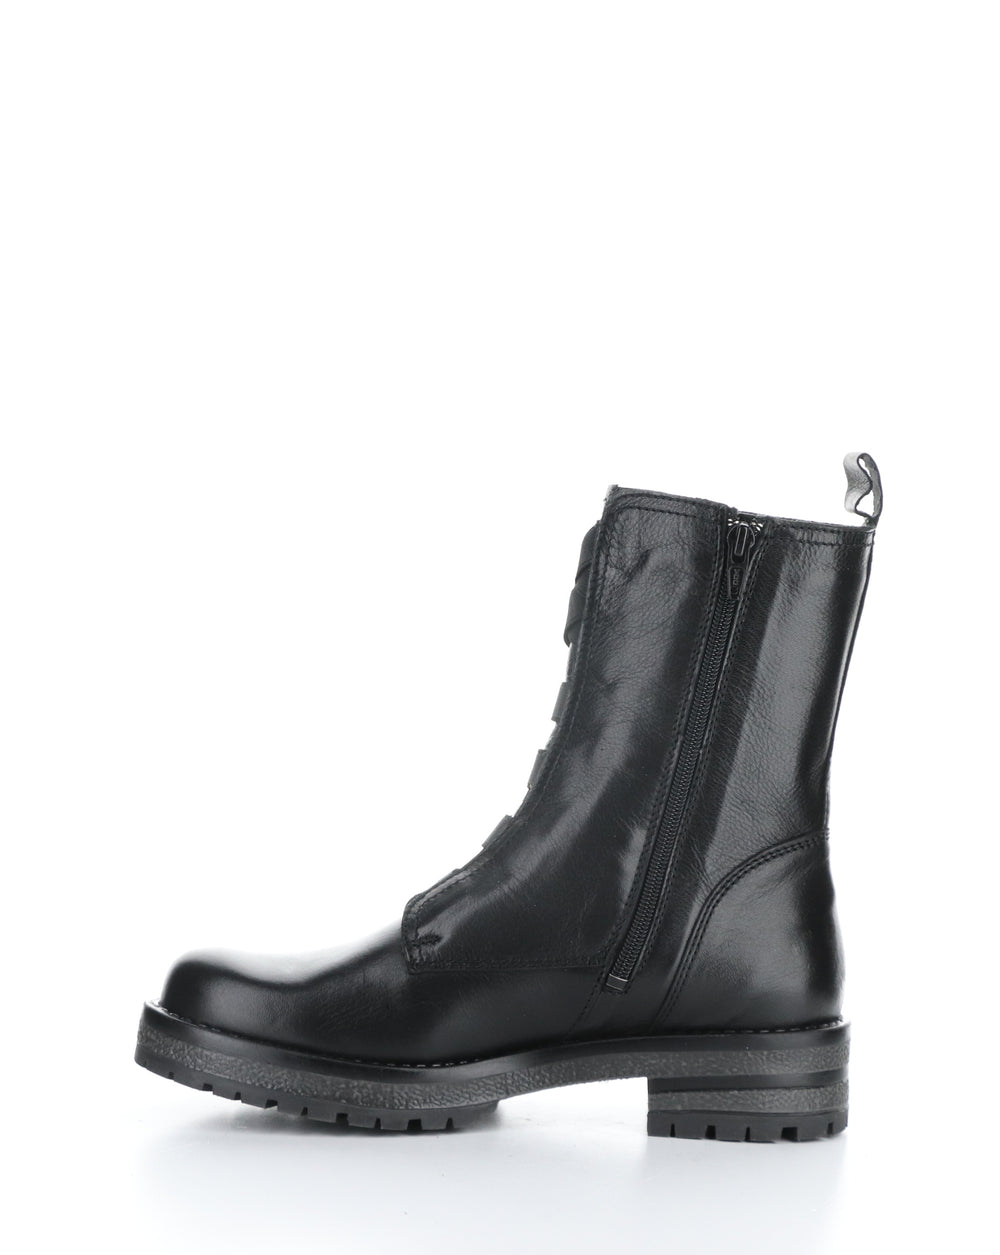 PATRAI BLACK Elasticated Boots